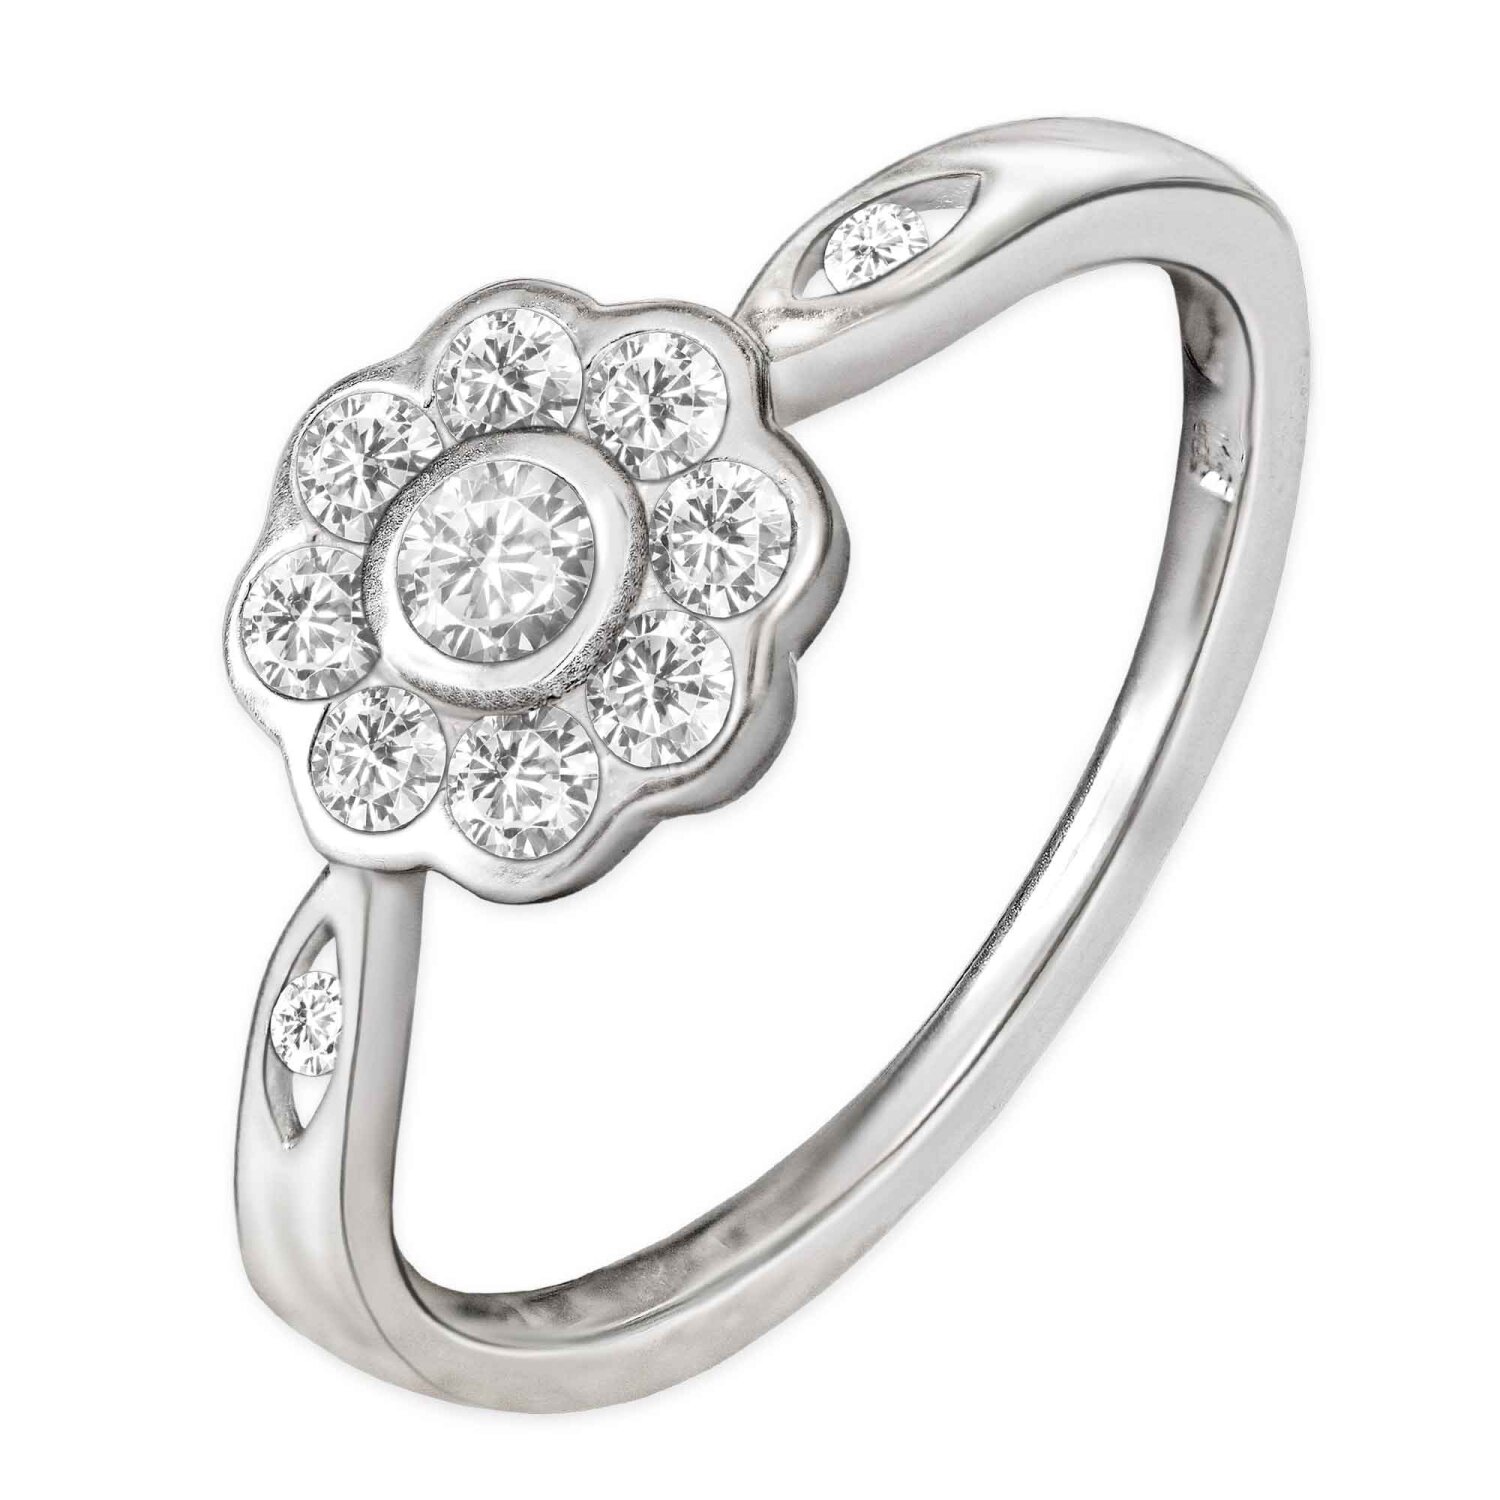 Silberner Ring Blumenmotiv viele Zirkonia Echt Silber 925 wählbare Größe